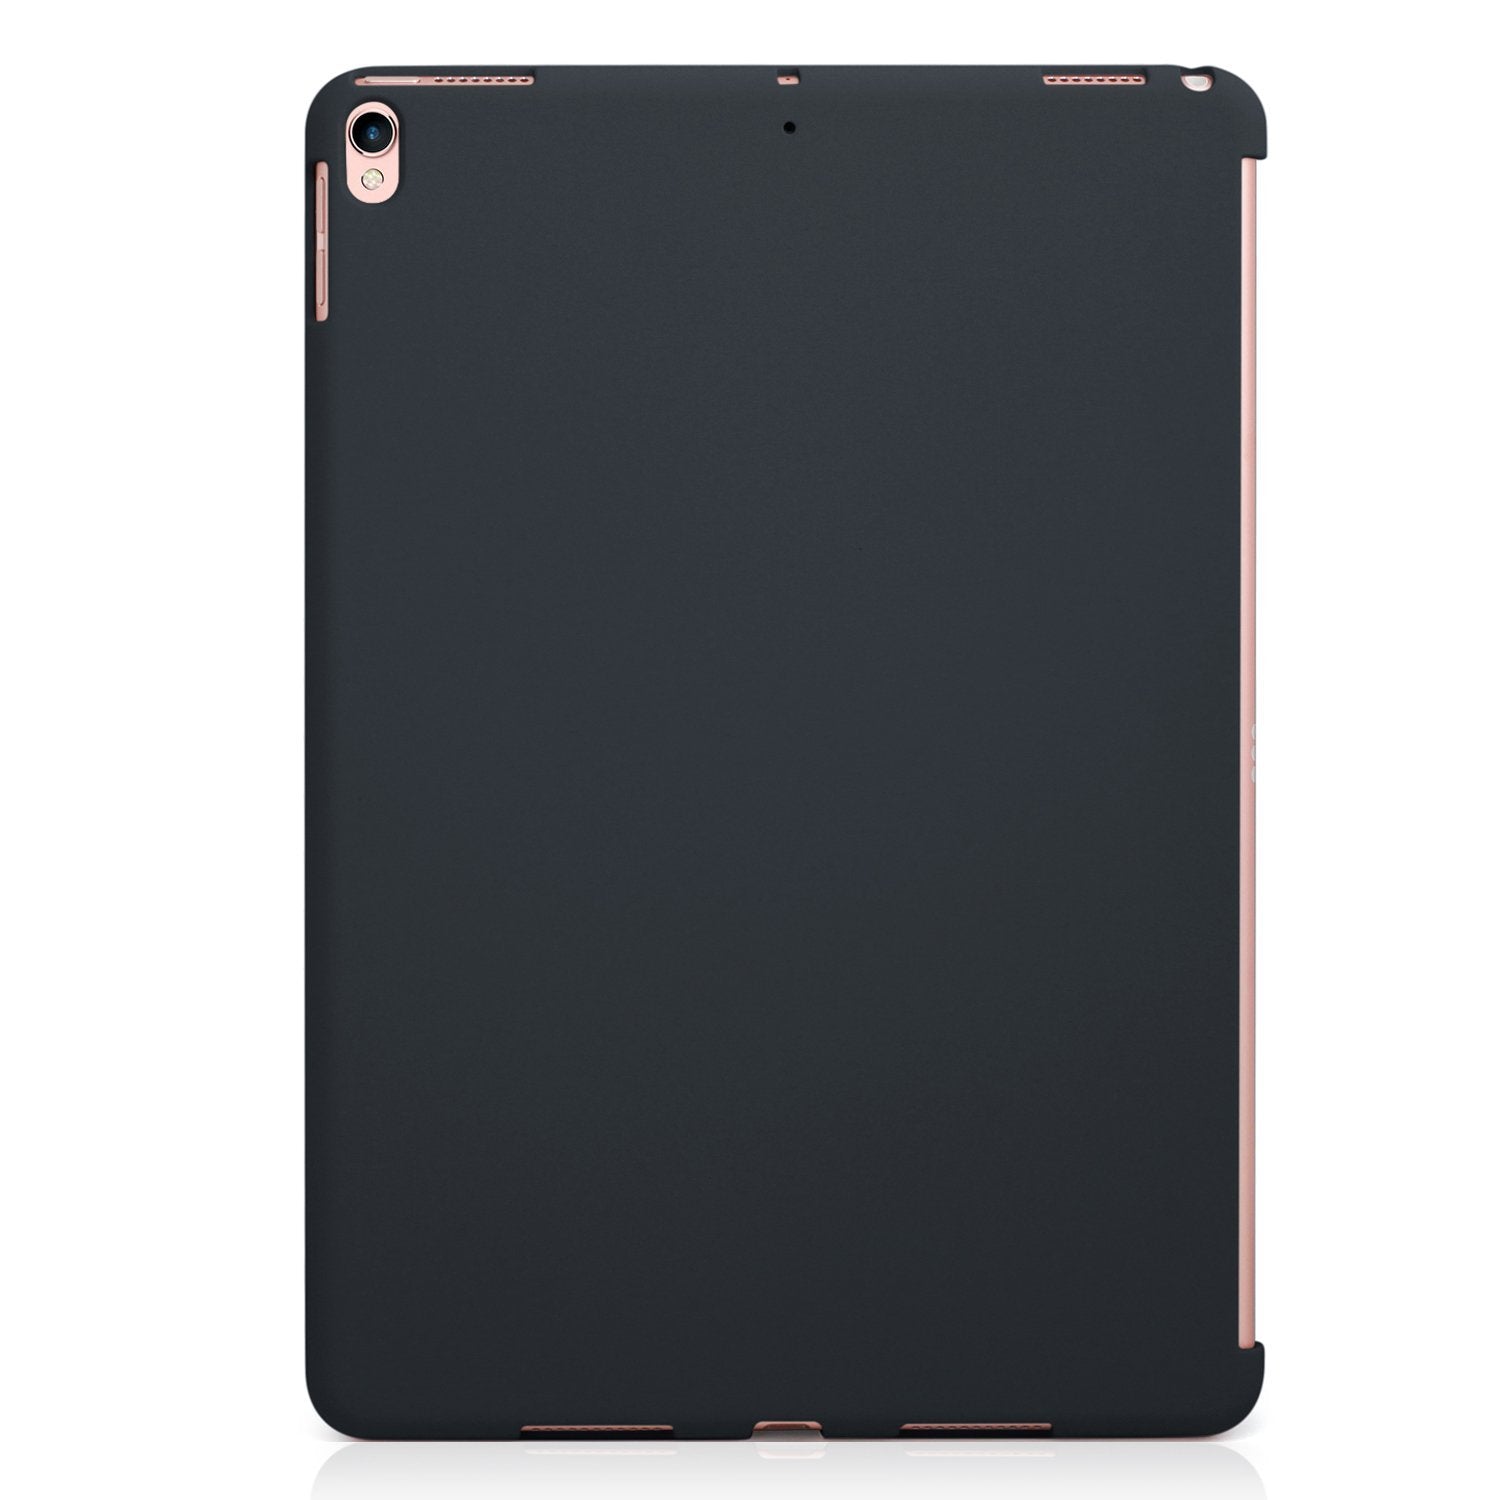 LUVVITT SVELTE Hard Slim Fit Premium Case for iPad Pro 12.9 (2017) - Black